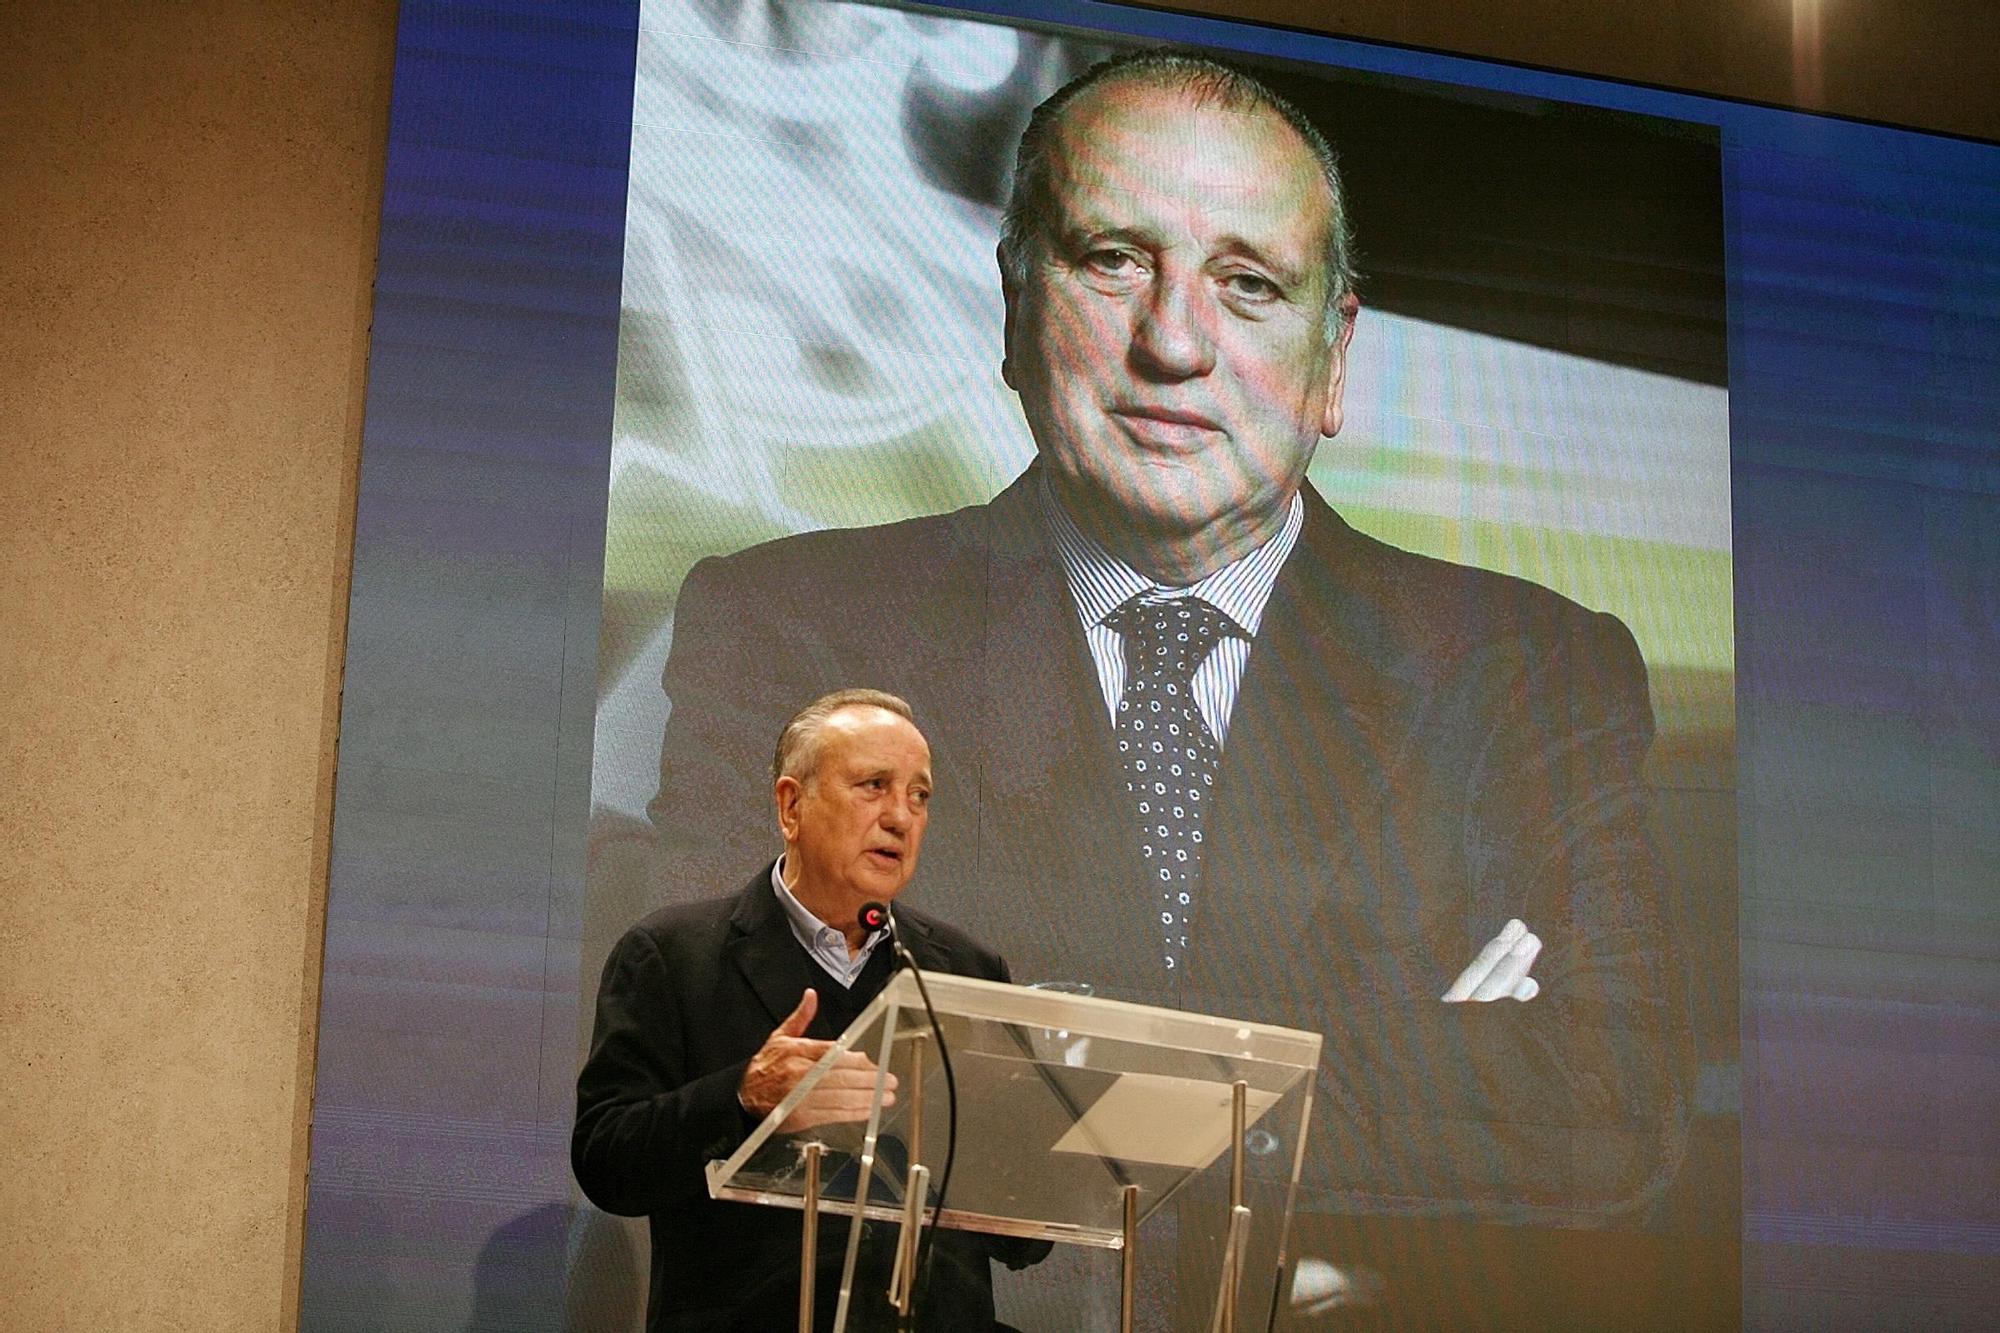 El homenaje a sus presidentes culmina los actos por el centenario del Villarreal